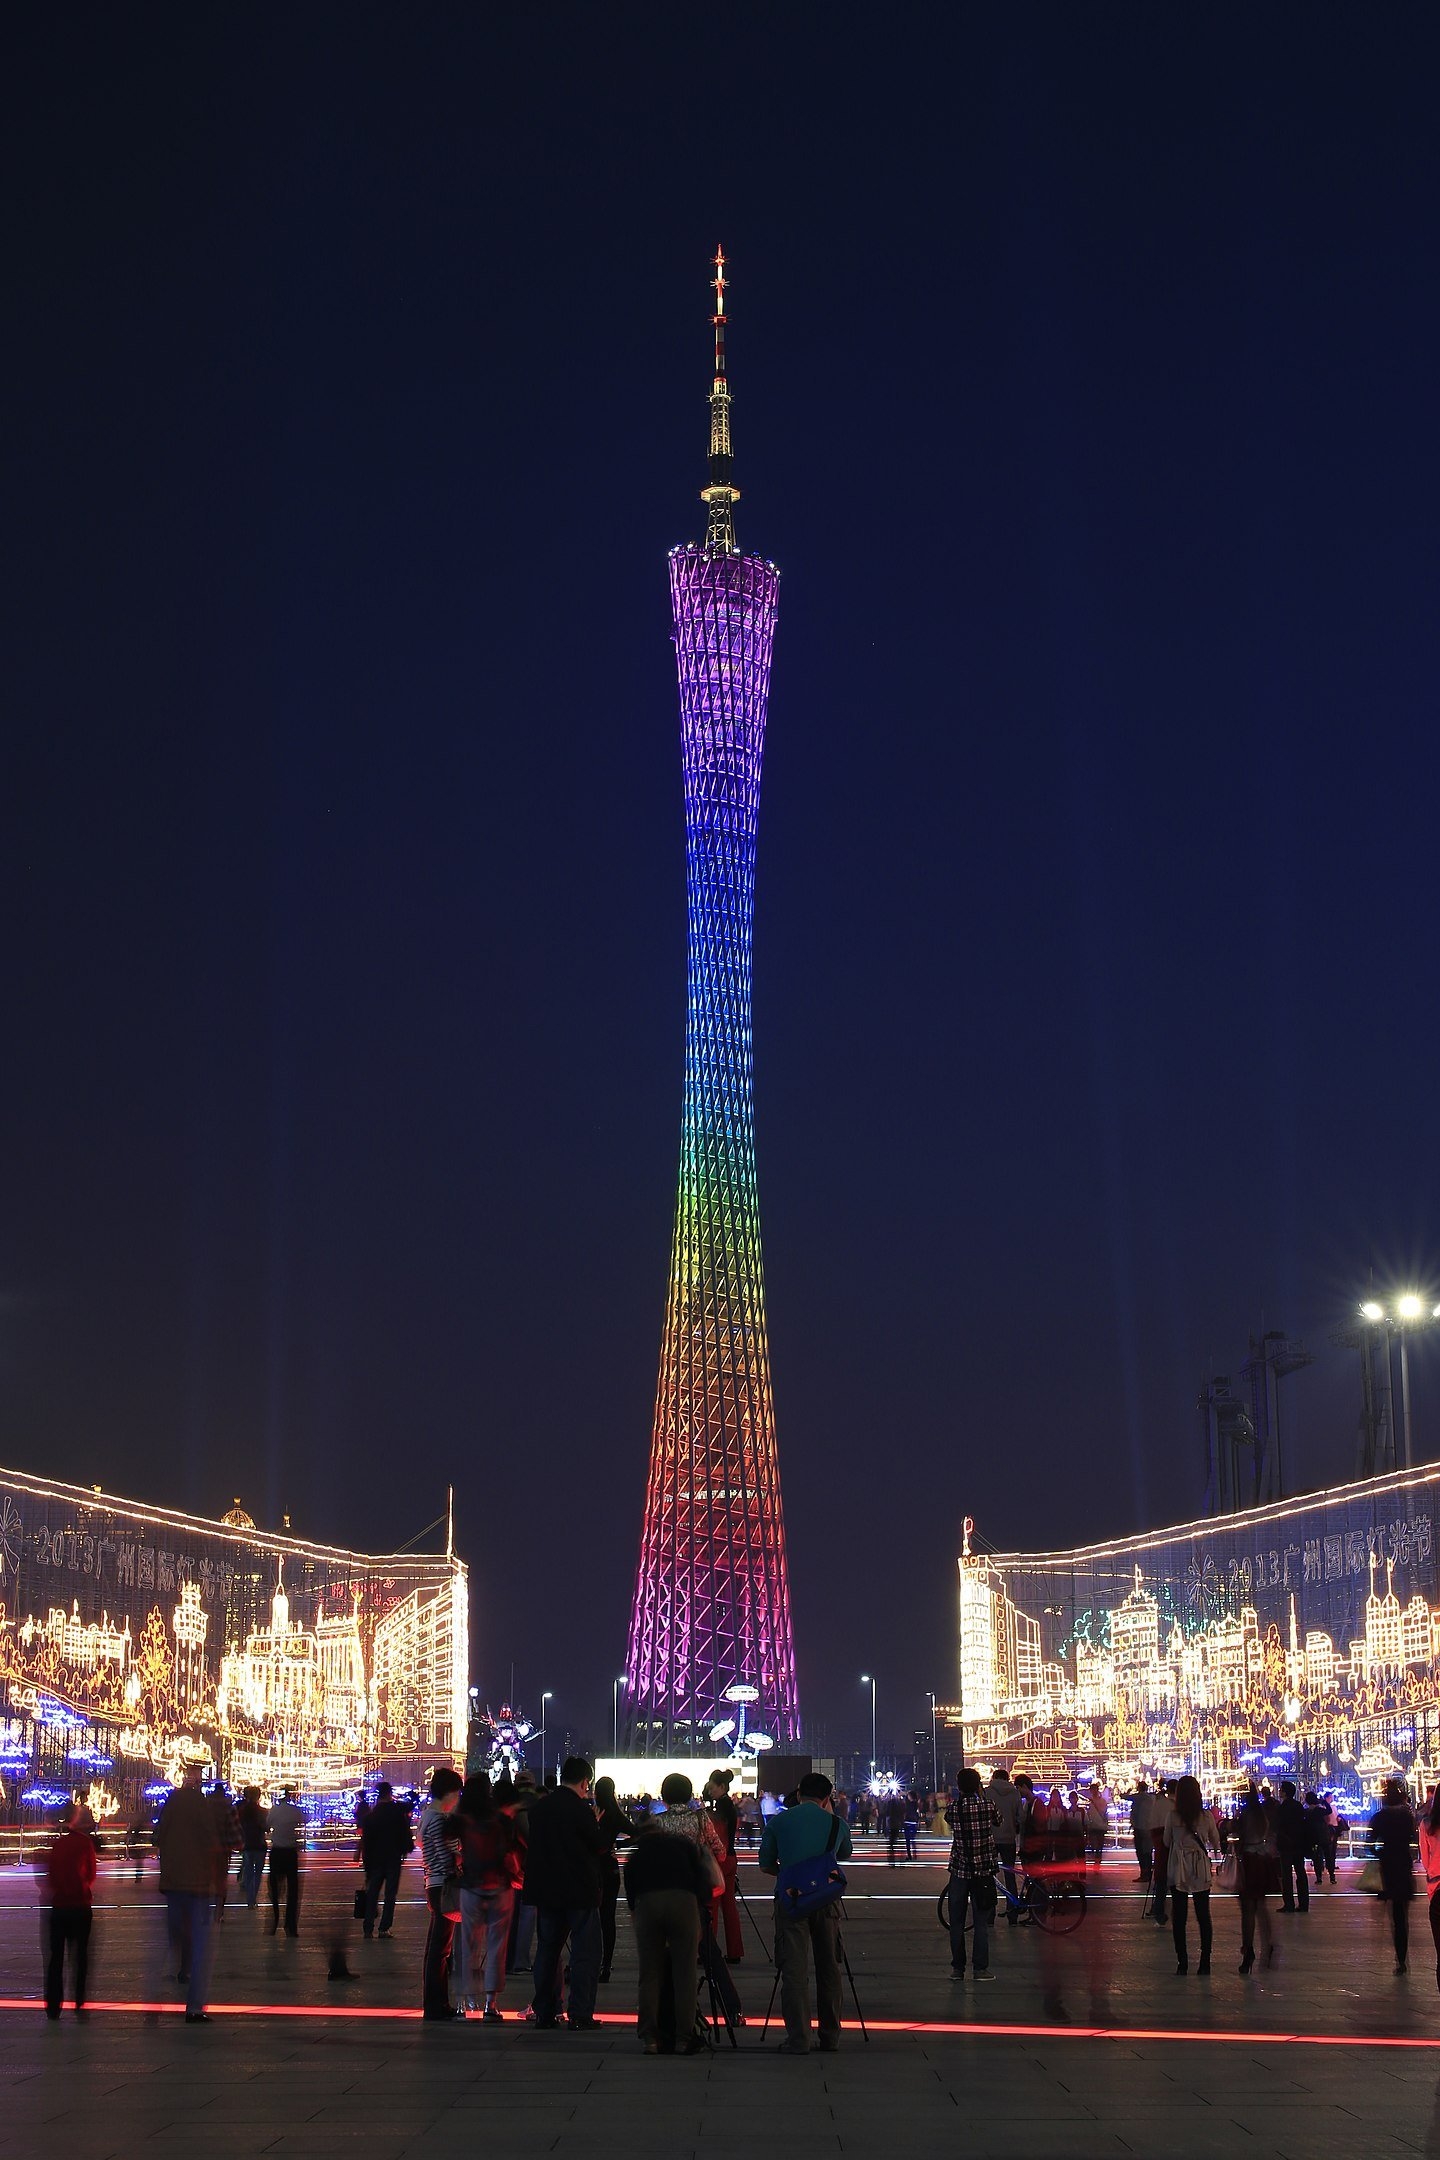 Canton Tower - 600 metros - China - Inaugurada em 2012, fica na cidade de Guangzhou, e predominou como a maior torre do país até a construção da Torre de Shanghai. Sua iluminação conta com cerca de 7 mil luzes de led, que proporcionam um grande espetáculo visto de longe durante a noite. Reprodução: Flipar